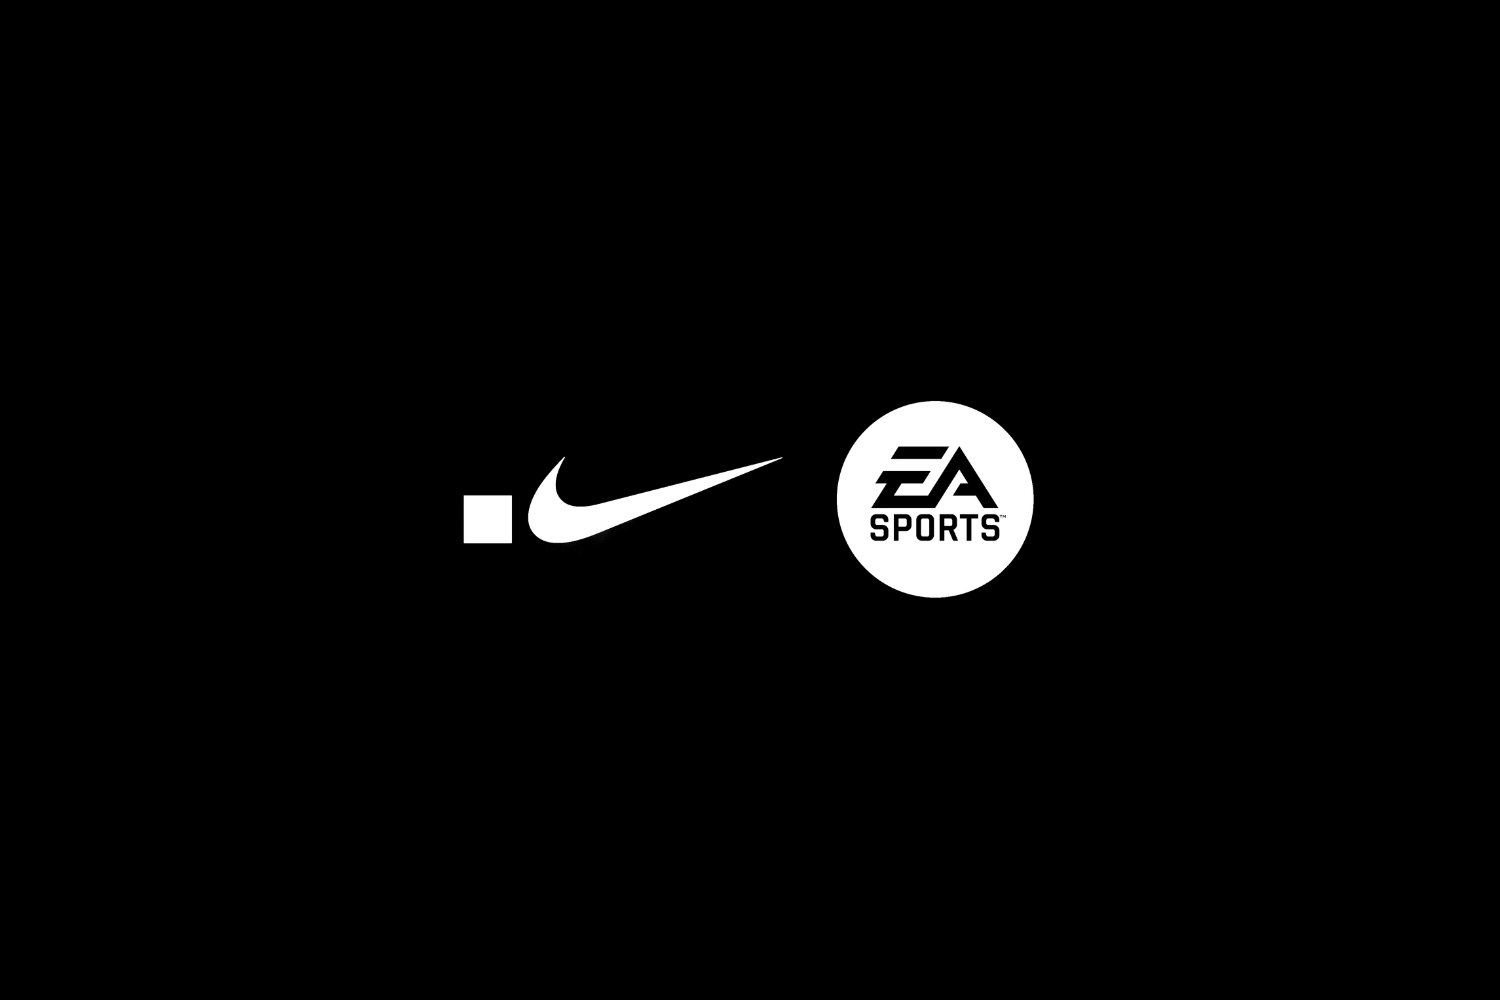 Nike en EA werken samen om .SWOOSH virtueel te integreren in EA SPORTS